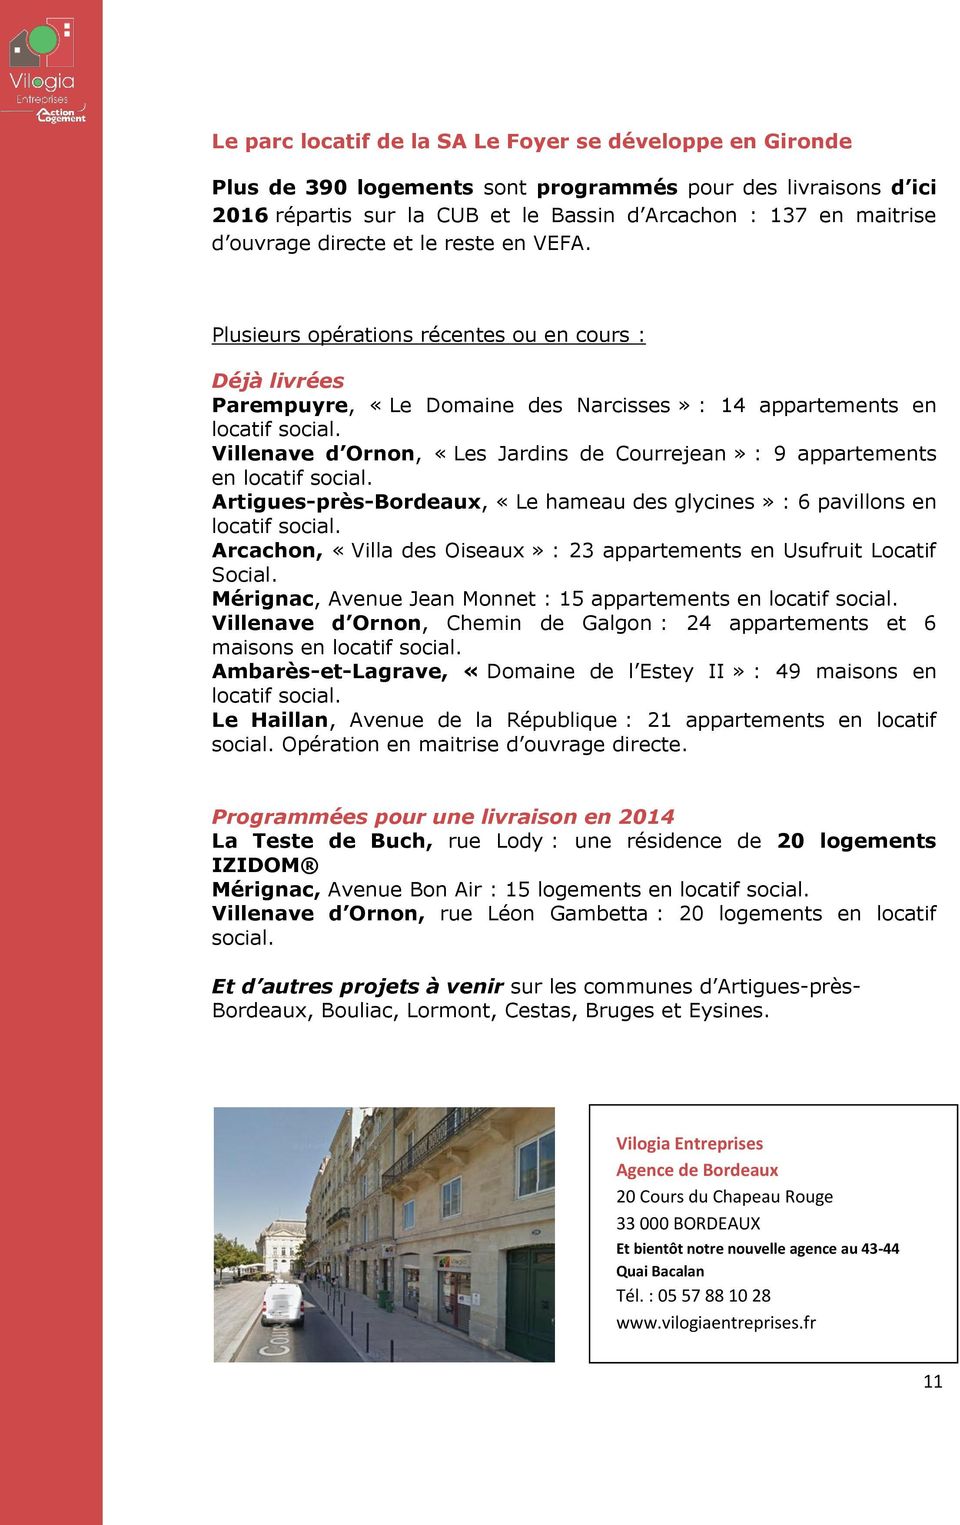 Villenave d Ornon, «Les Jardins de Courrejean» : 9 appartements en locatif social. Artigues-près-Bordeaux, «Le hameau des glycines» : 6 pavillons en locatif social.